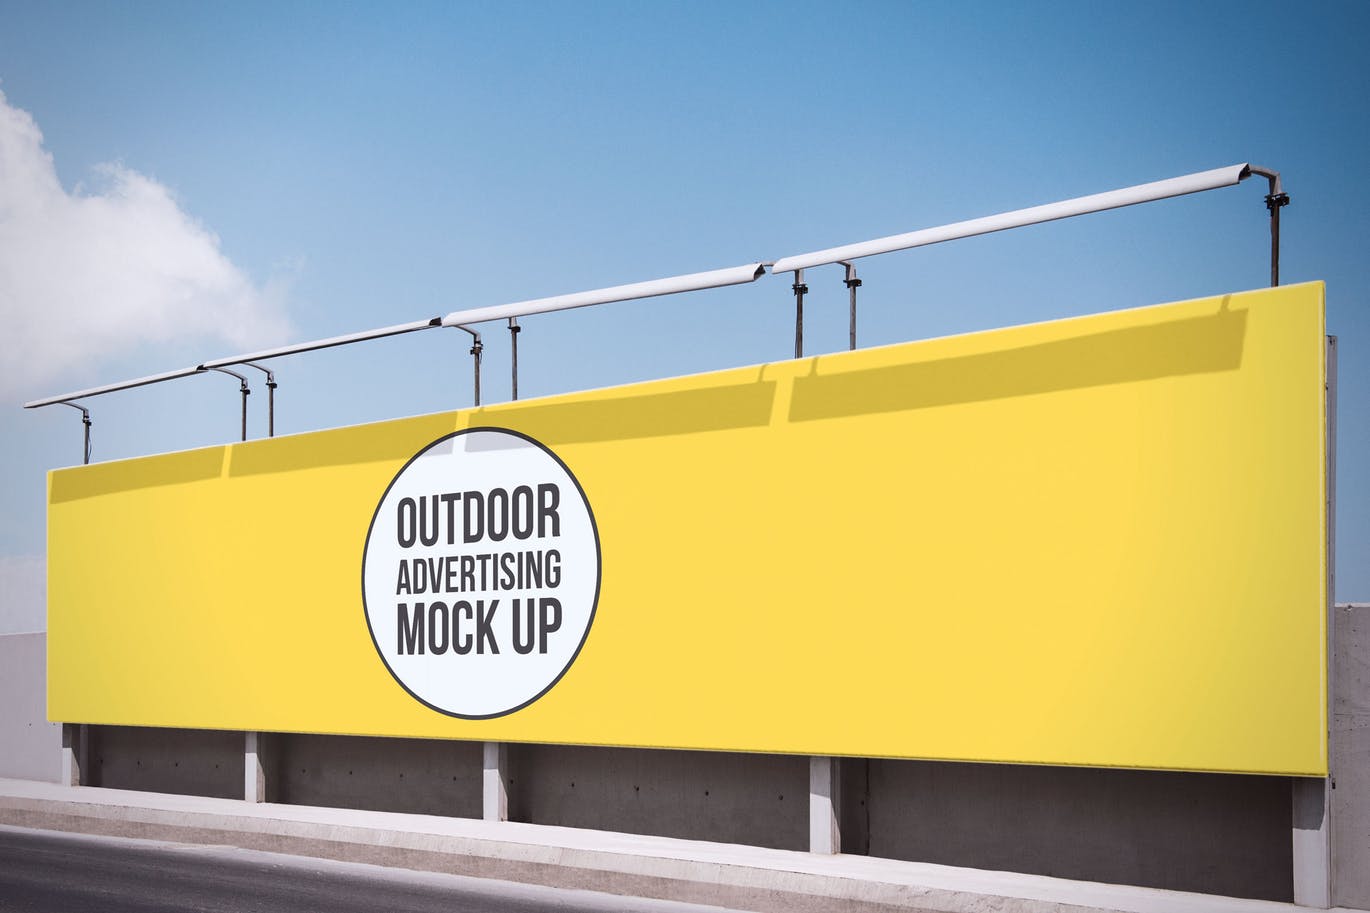 大型公路广告牌设计效果图样机模板#7 Outdoor Advertisement Mockup Template #7插图